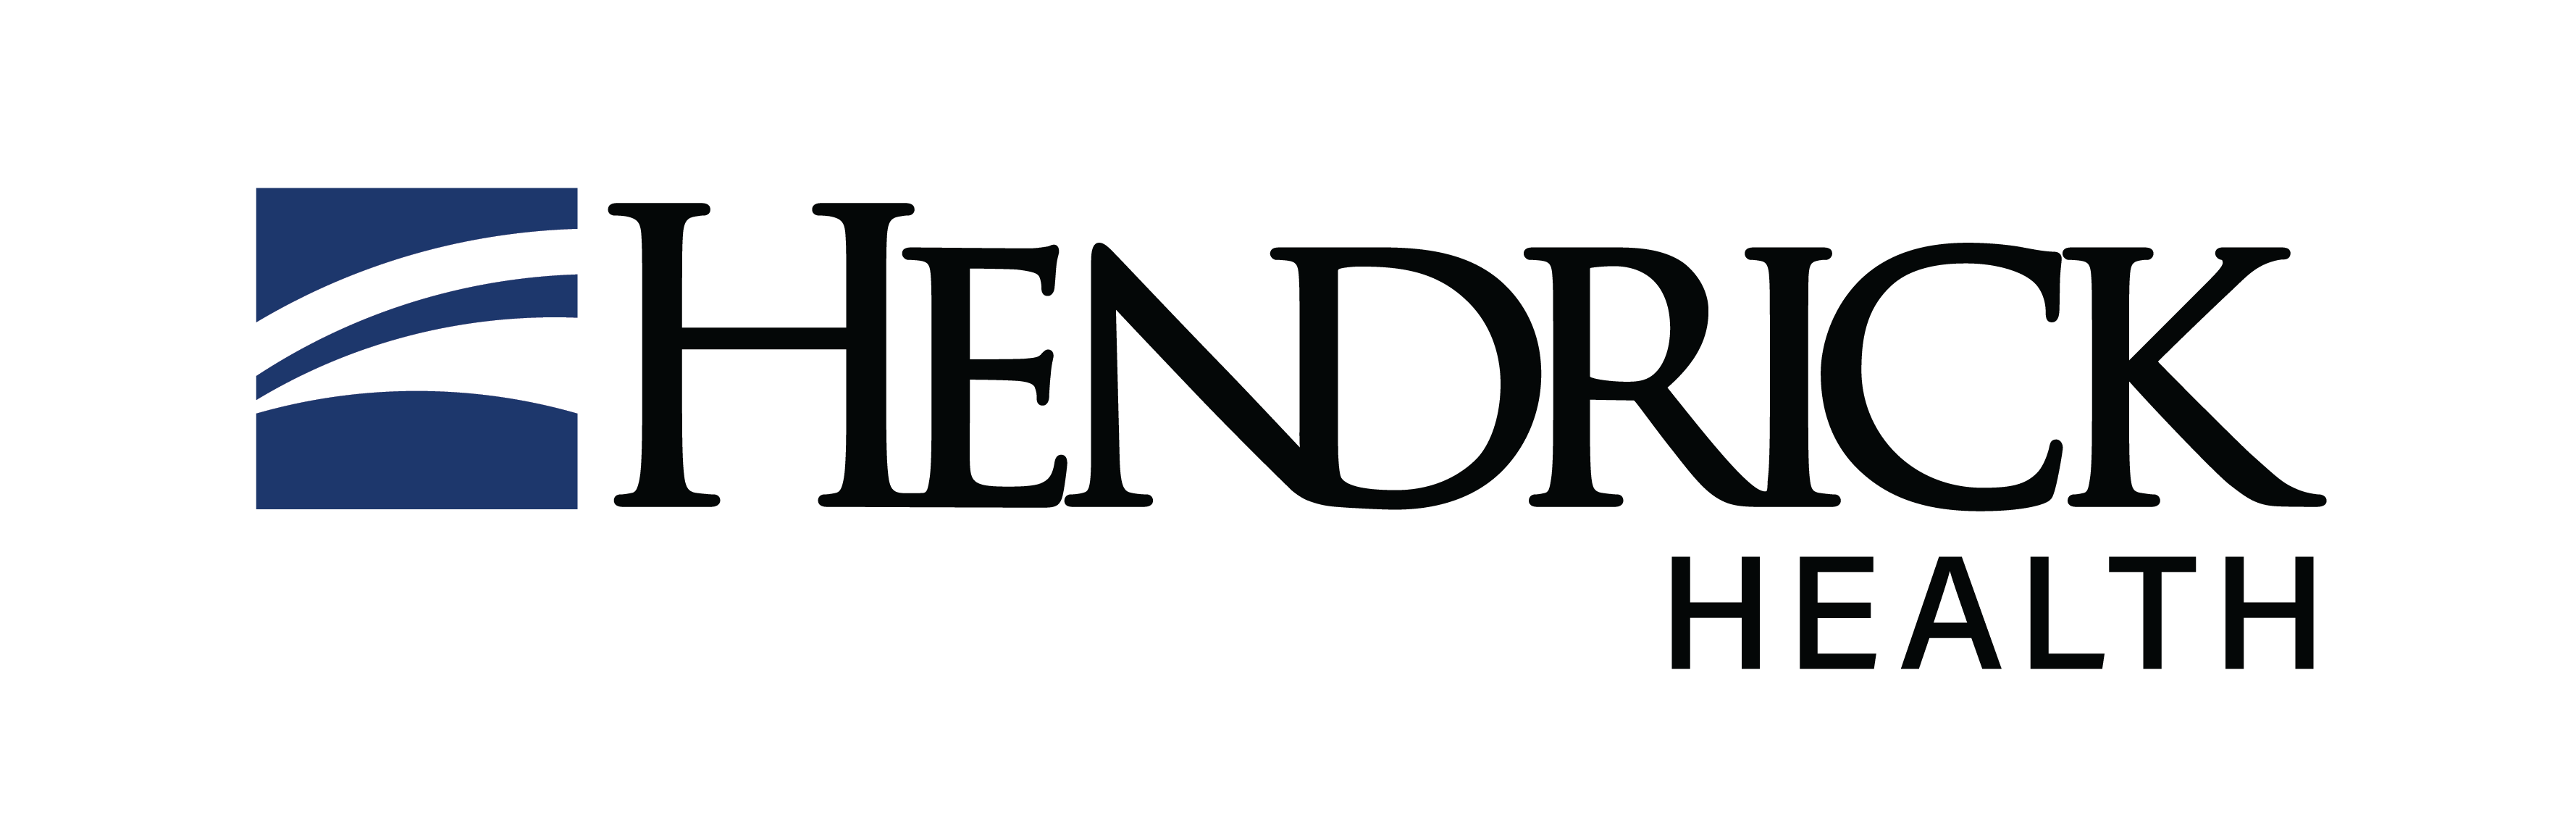 Hendrick Clinic logo